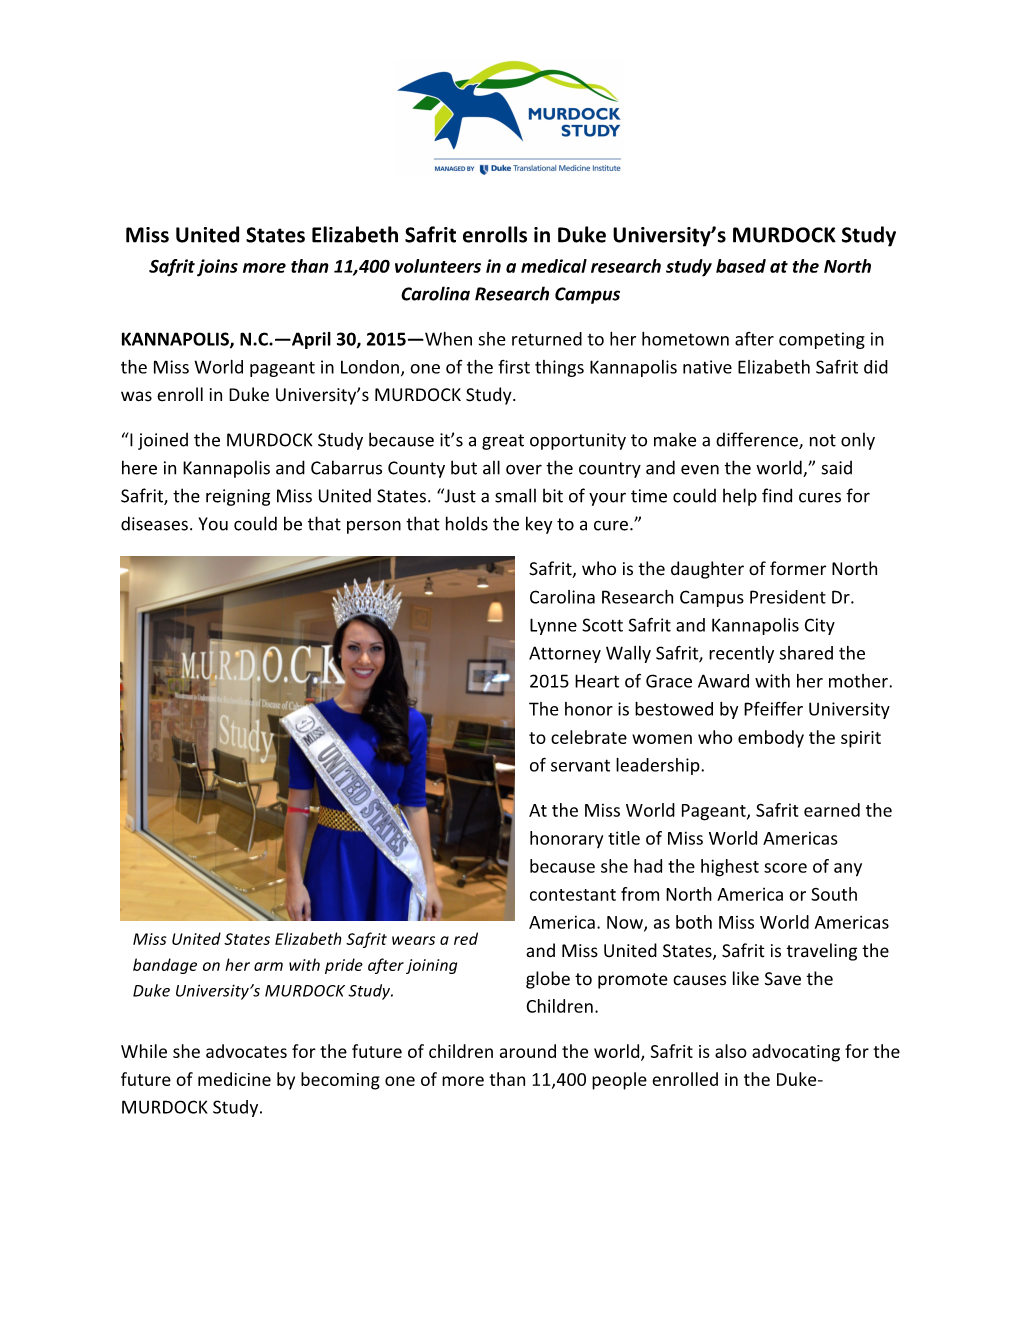 Miss United States Elizabeth Safrit Enrolls in Duke